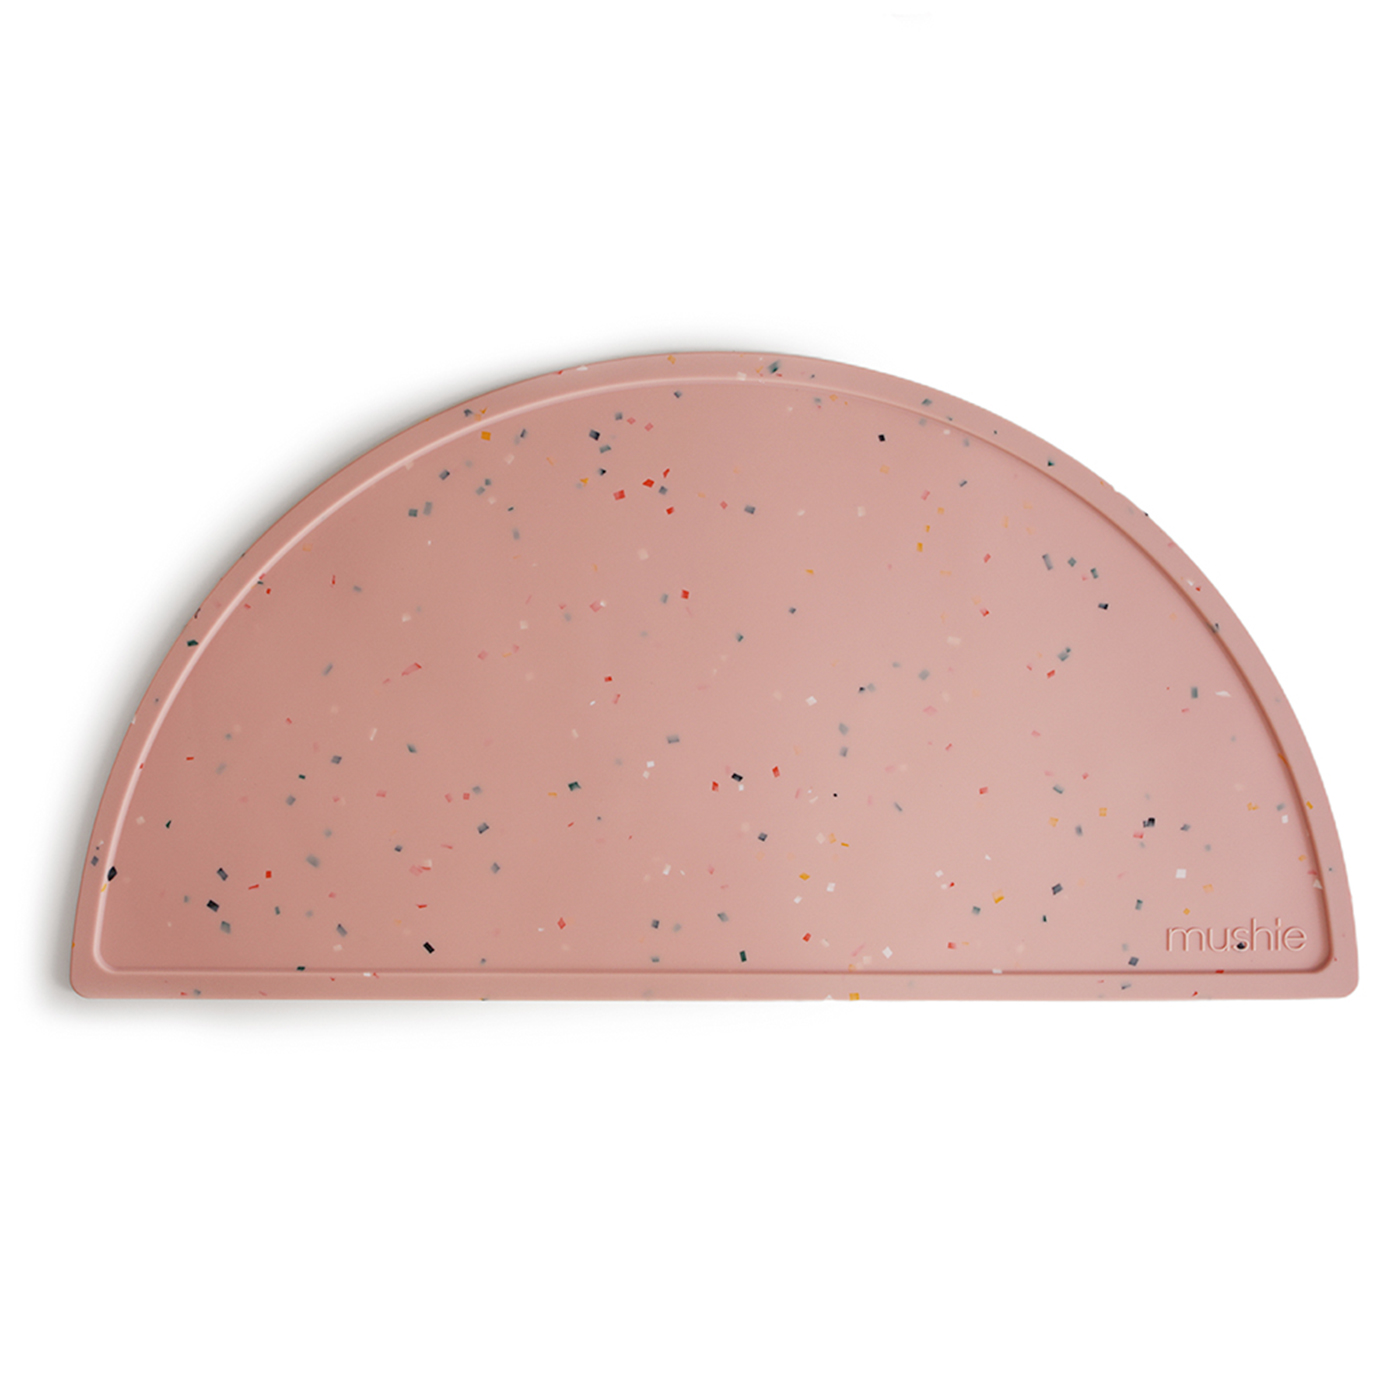  Mushie Silikon Mat  | Powder Pink Confetti